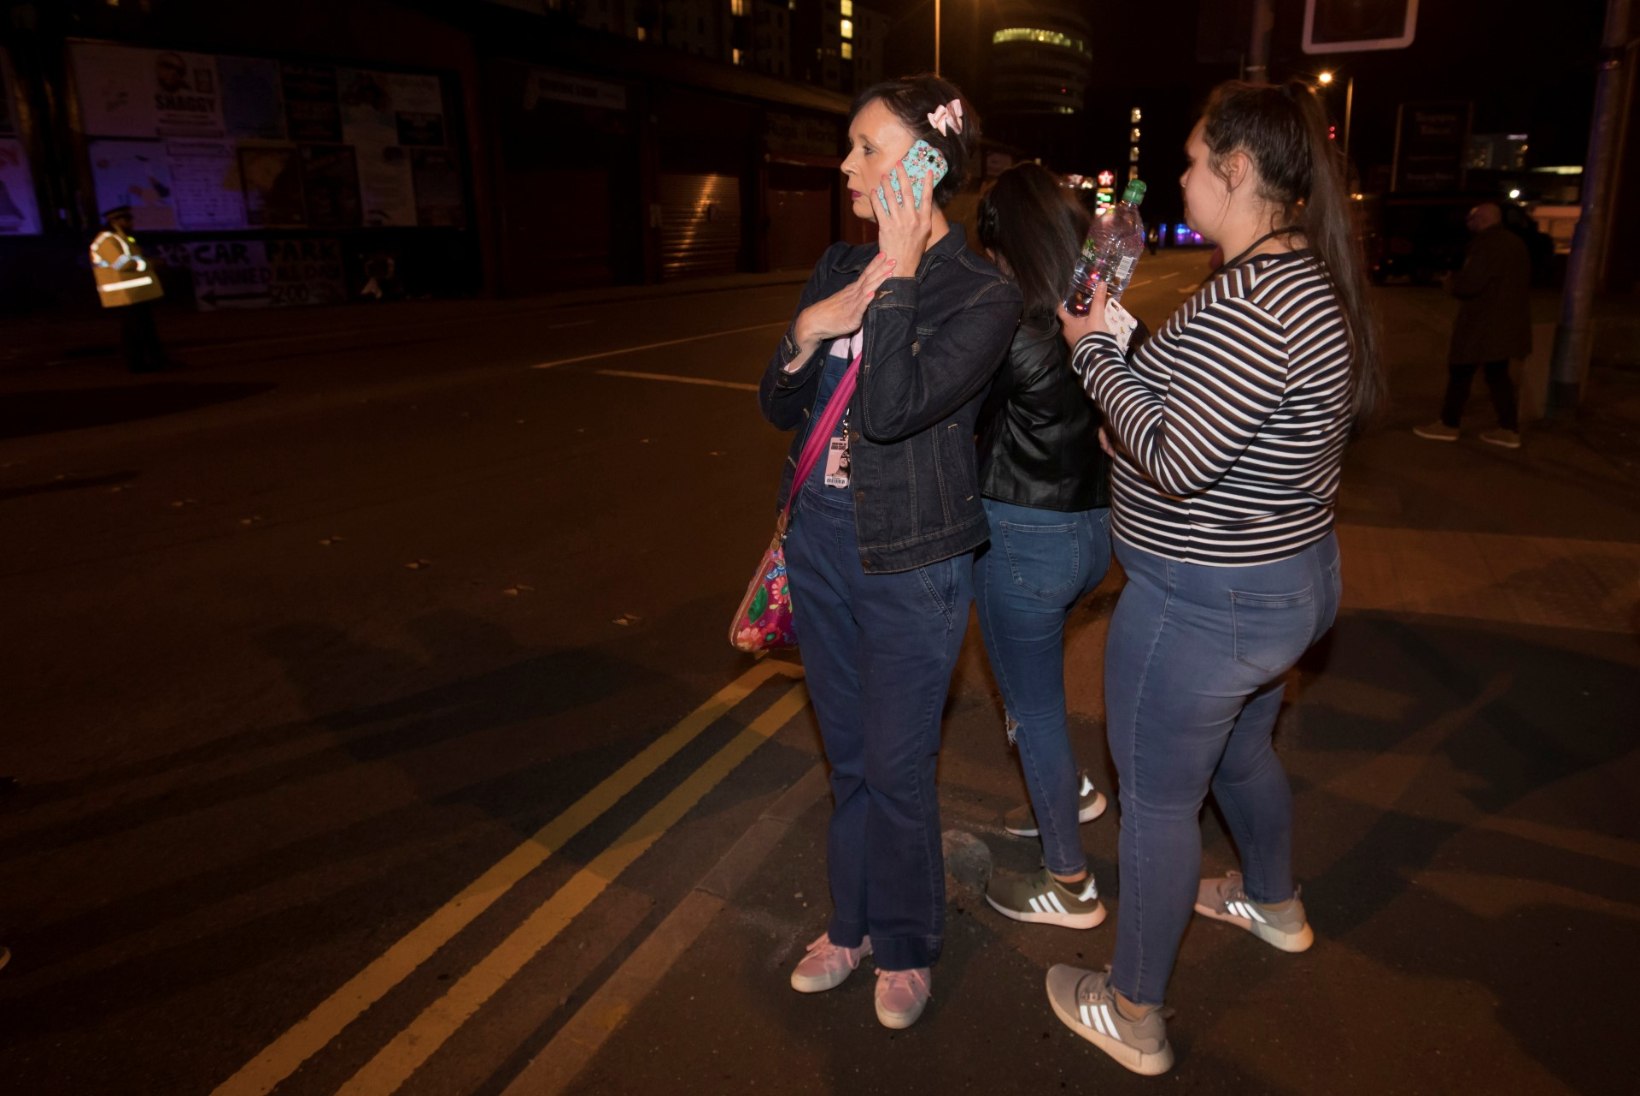 FOTOD ja VIDEOD | Manchesteri õuduse tunnistaja: "Laibad vedelesid kõikjal!"